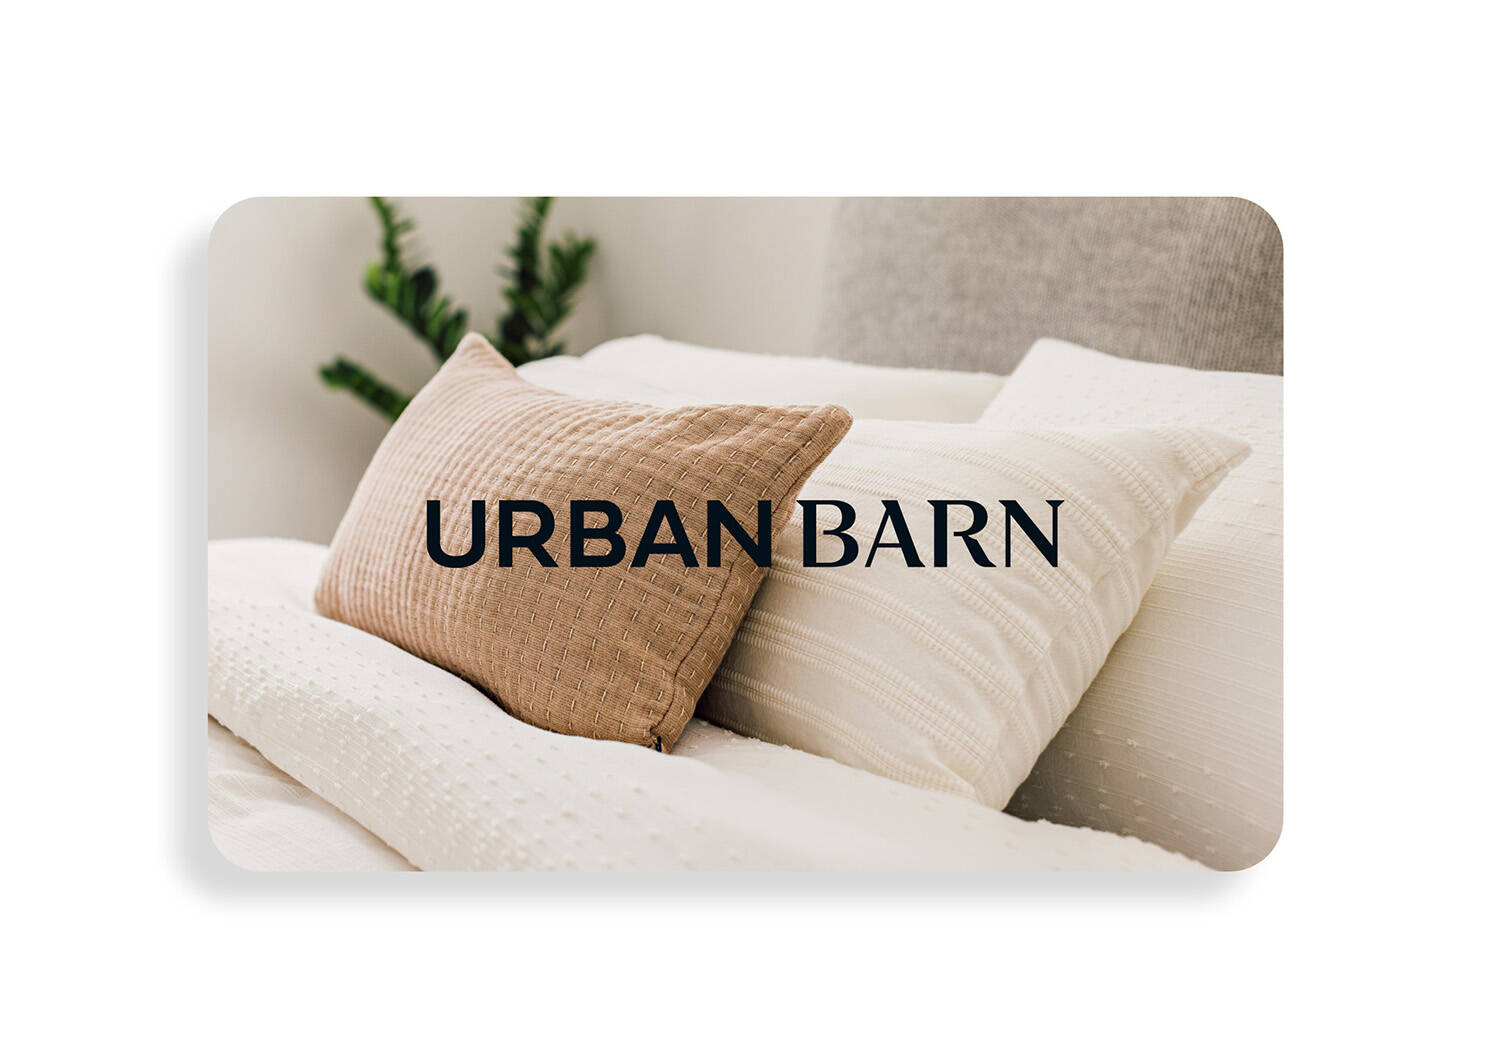 Carte-cadeau électronique Urban B, 500